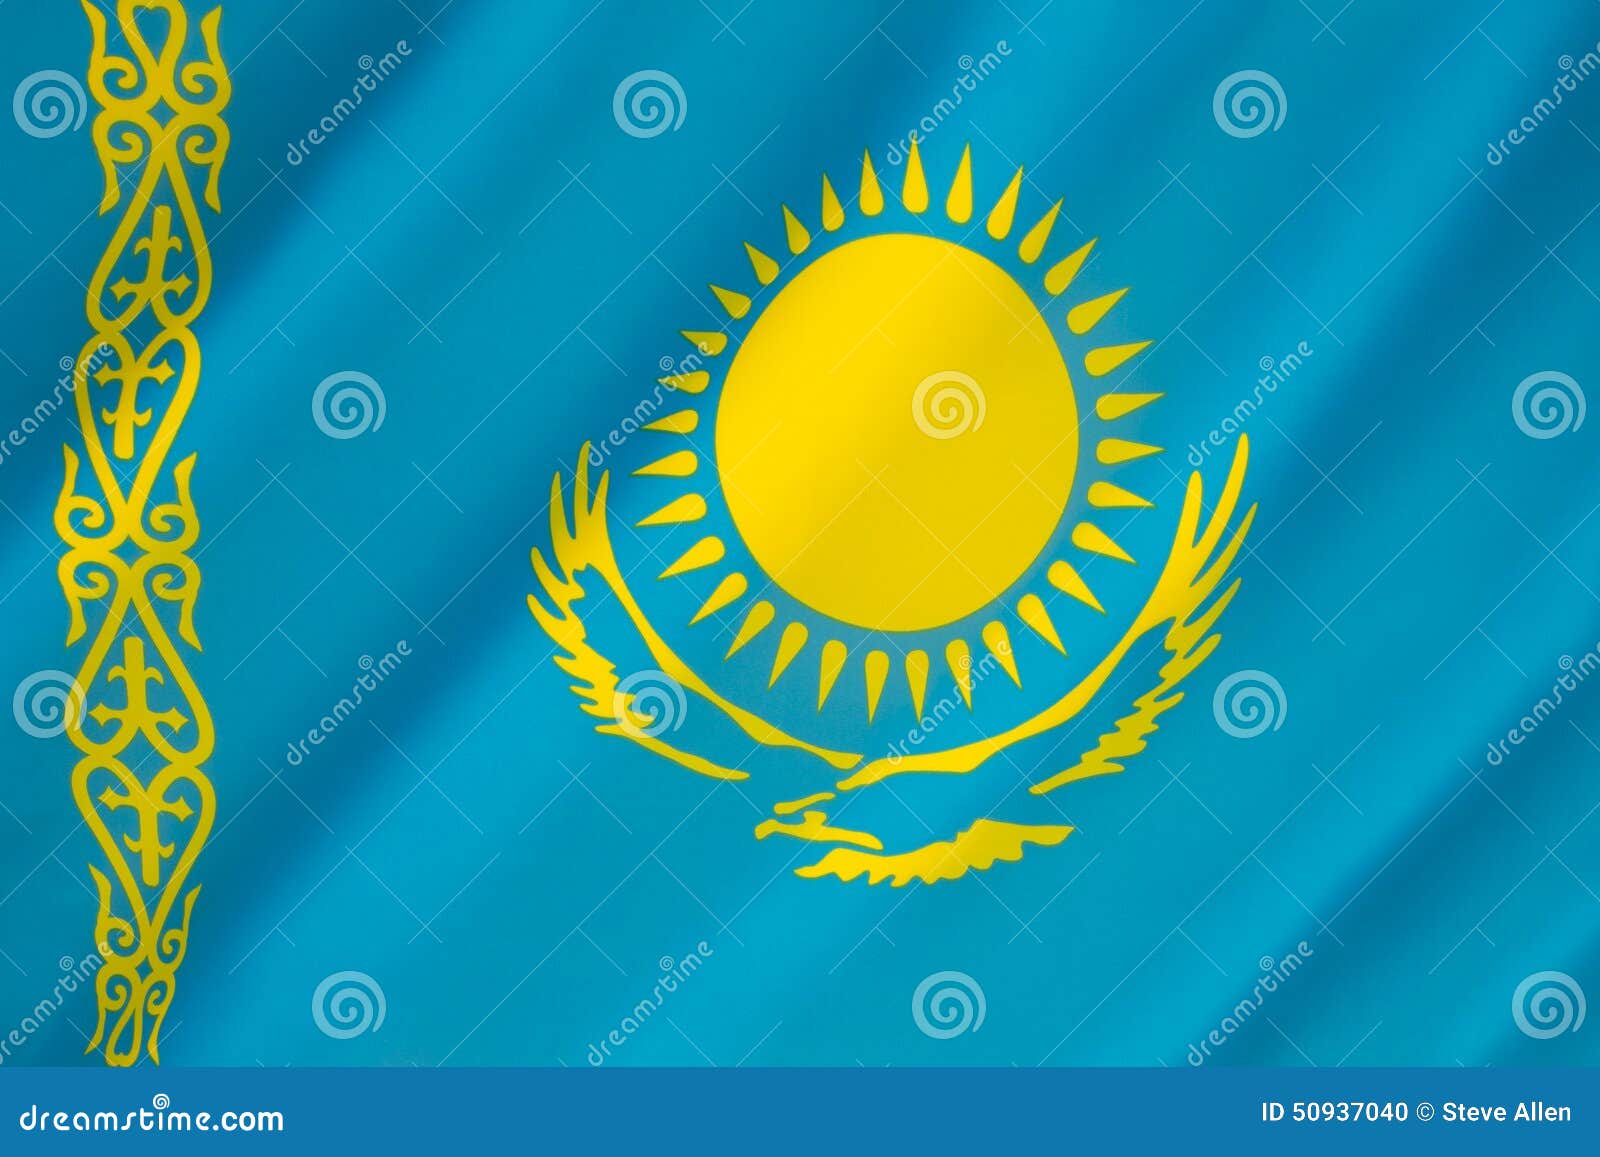 3,806 Flag Kazakhstan Stock Photos - Free & Royalty-Free Stock